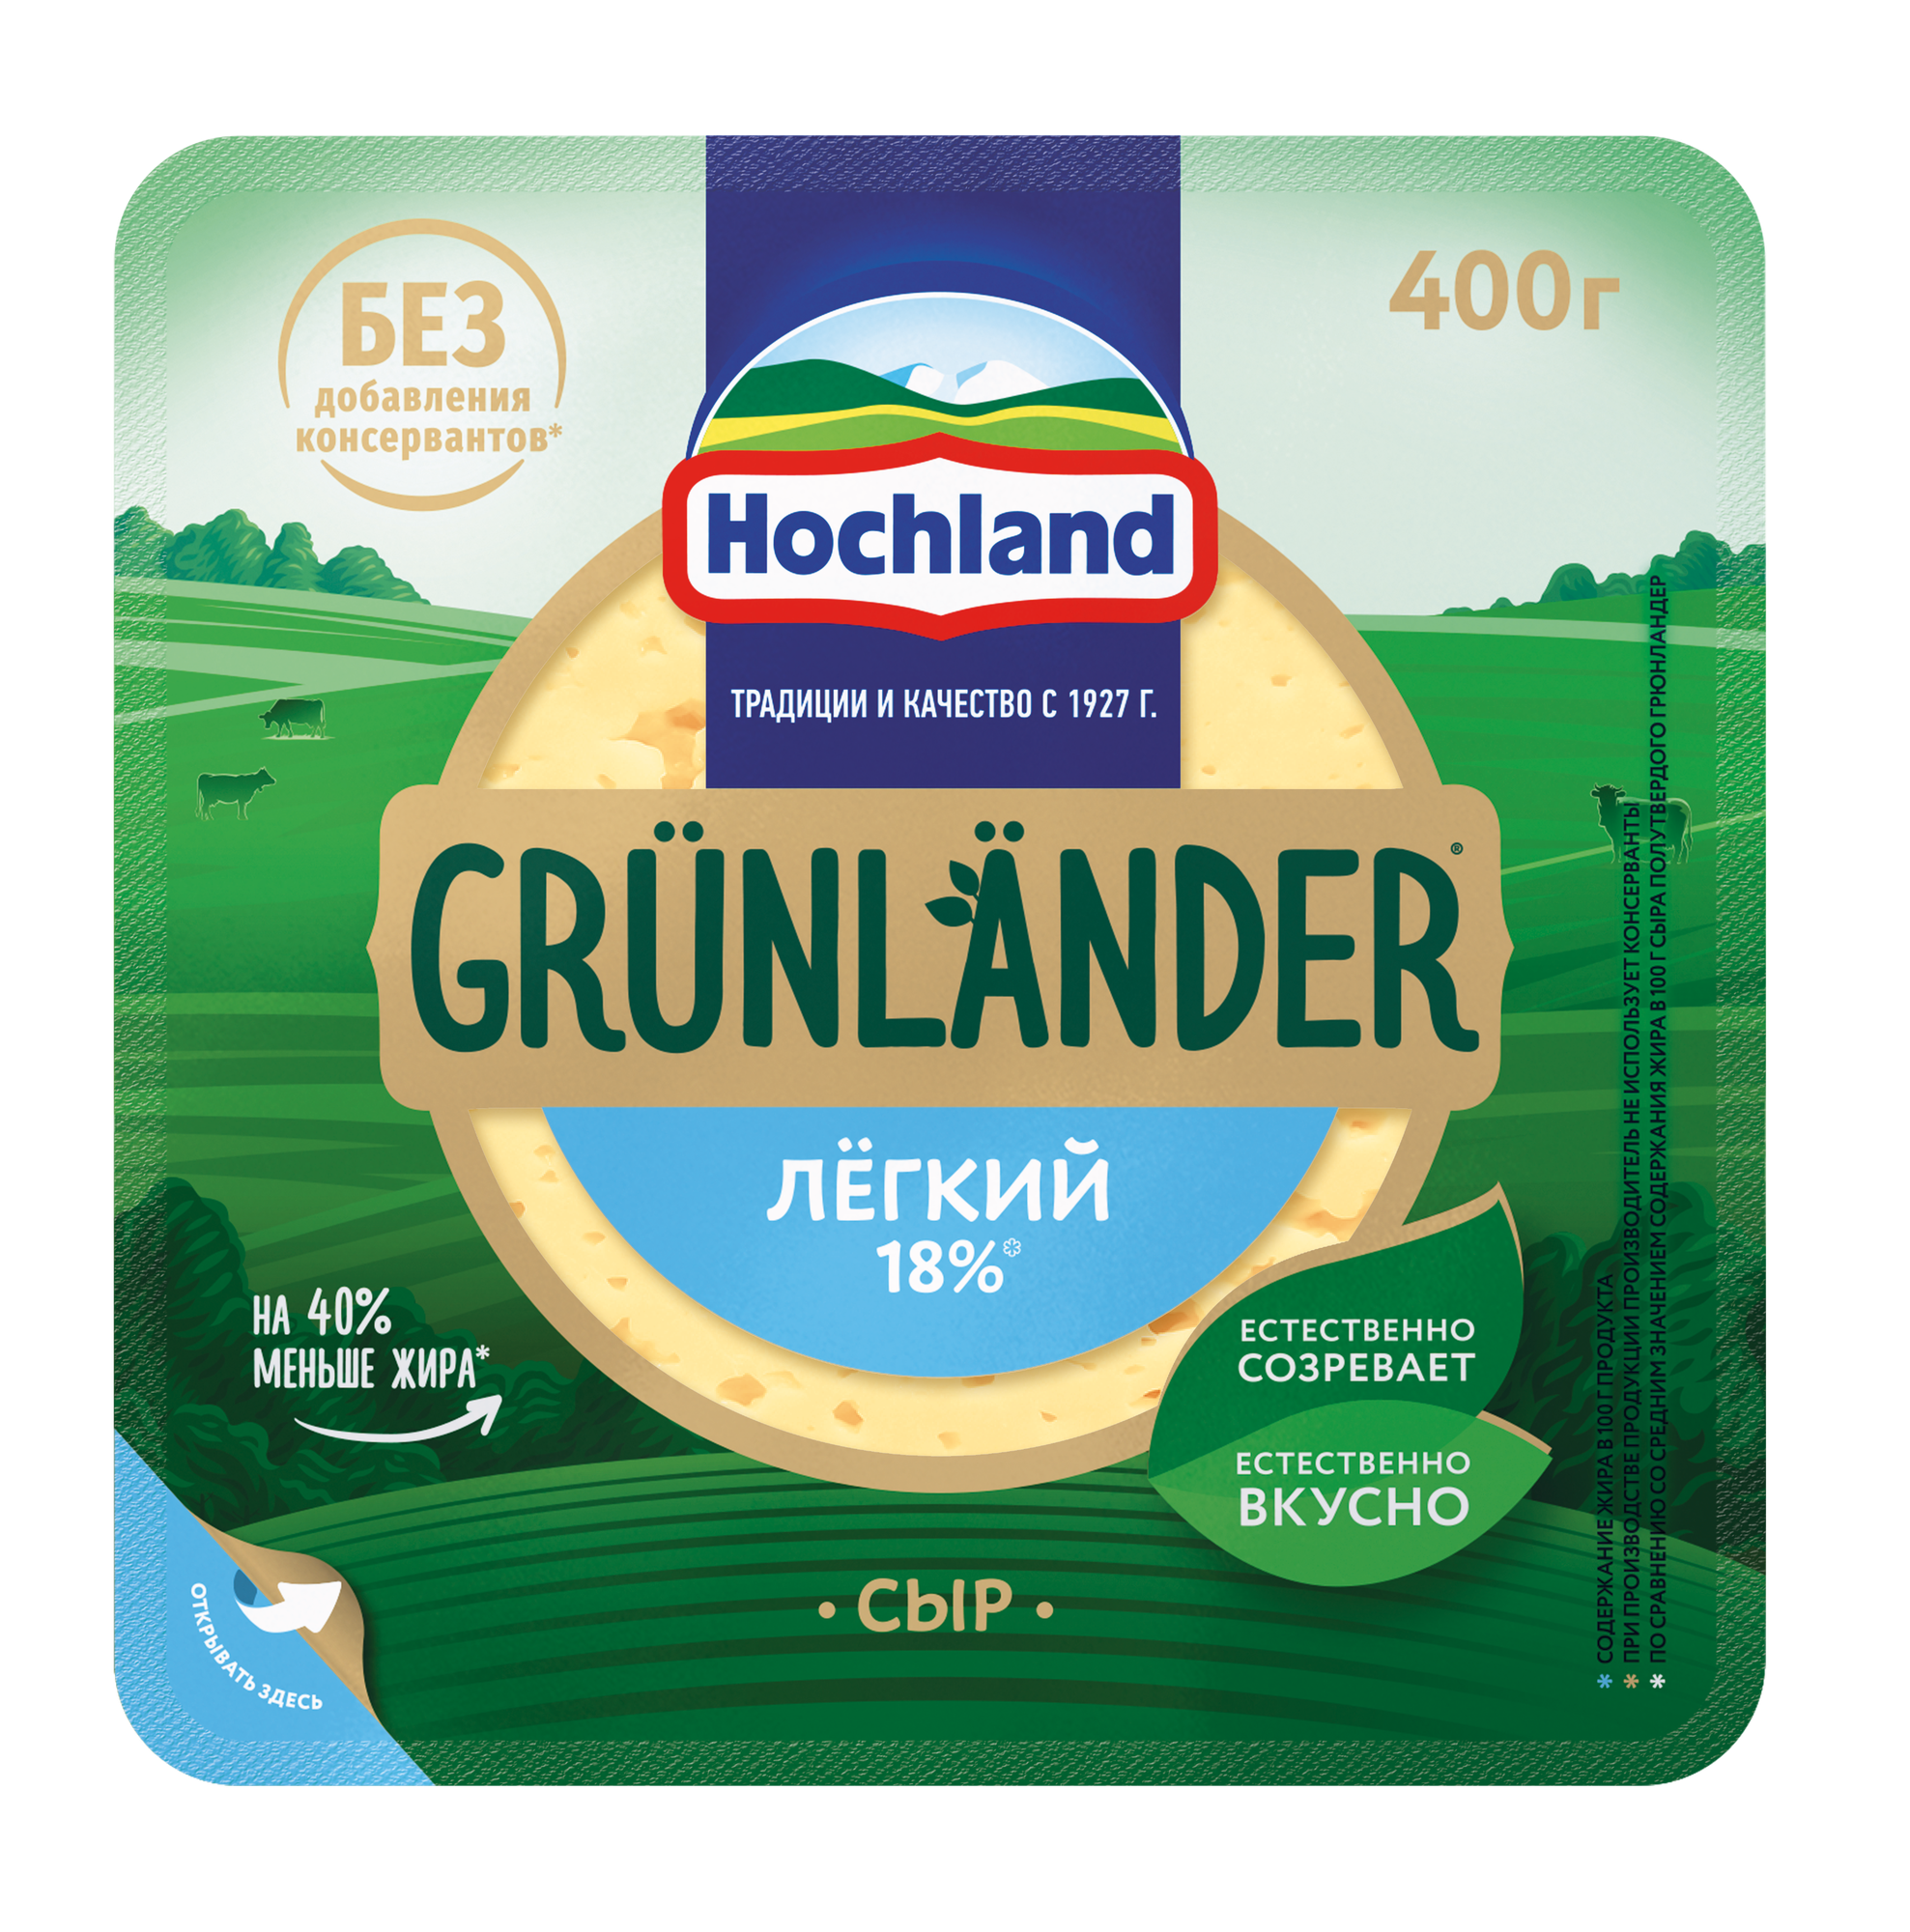 Сыр полутвердый Grunlander от Hochland (Грюнландер), «Легкий» 35%, кусок 400 г